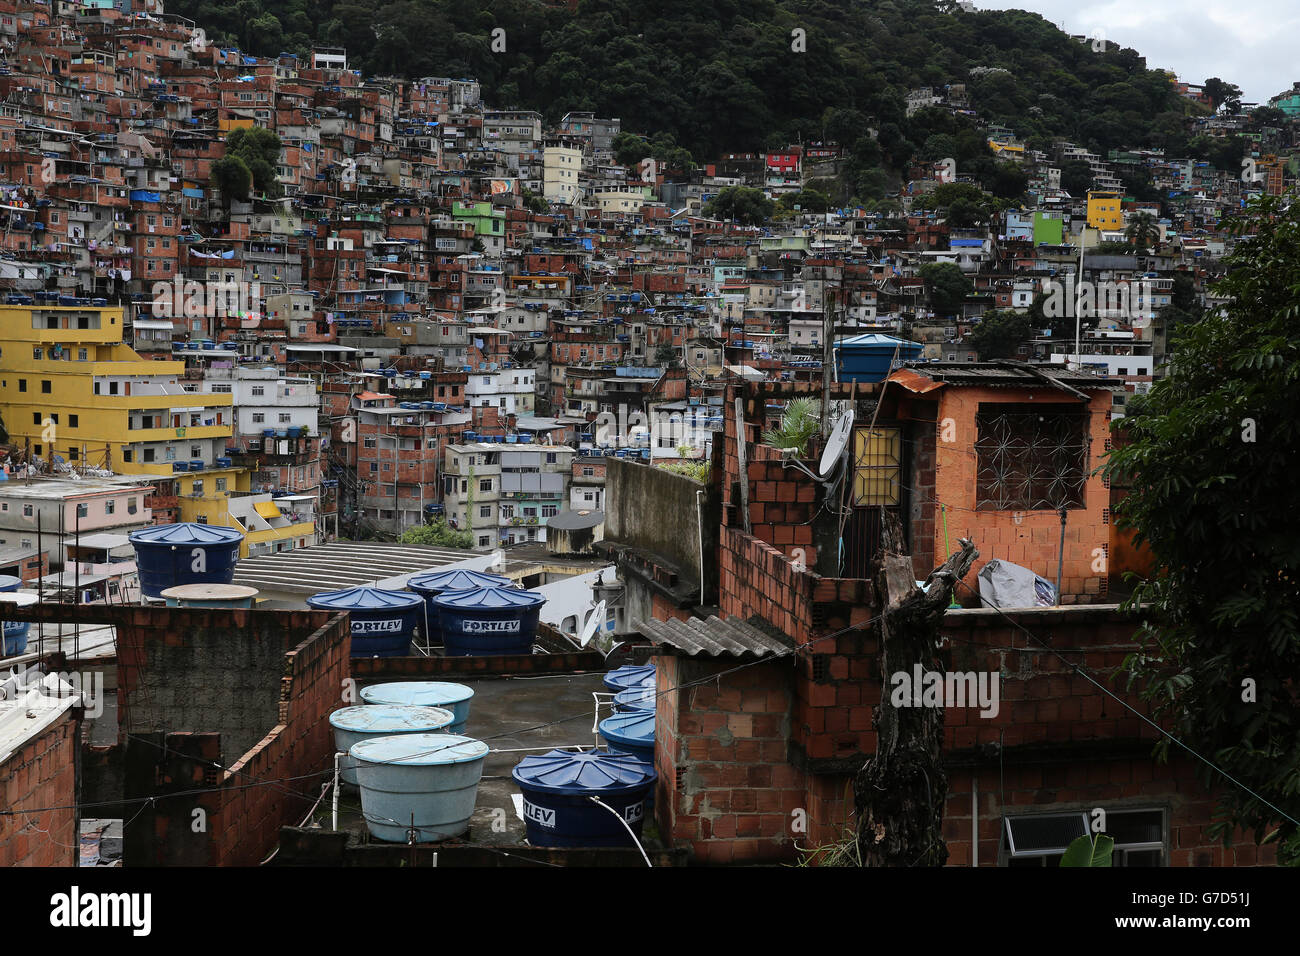 Rio de Janeiro, Brésil vues de la vie quotidienne à Rocinha Favela avec de grands butt d'eau qui servent l'eau quotidienne à chaque maison et une population d'environ 300,00 personnes Banque D'Images